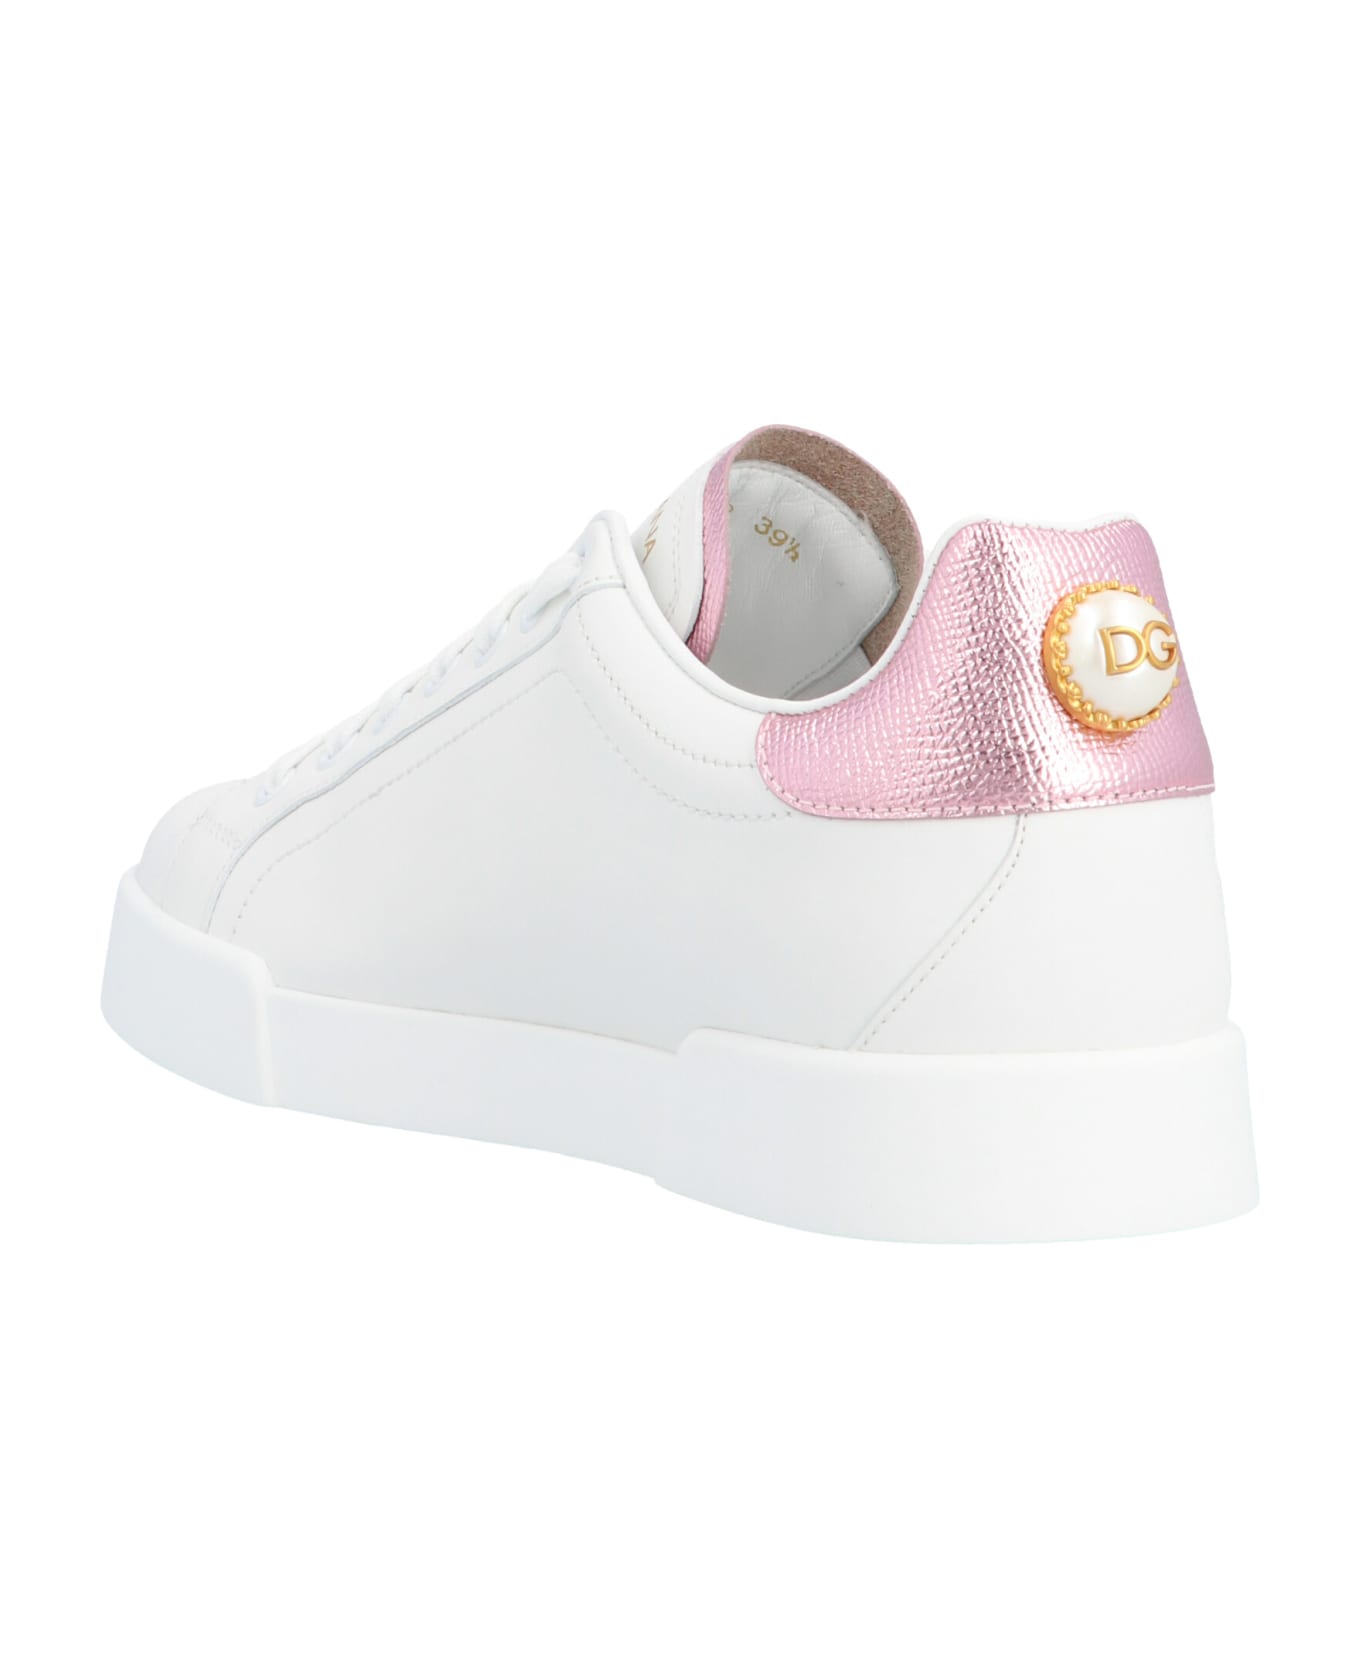 Dolce & Gabbana 'portofino' Shoes - Bianco/rosa